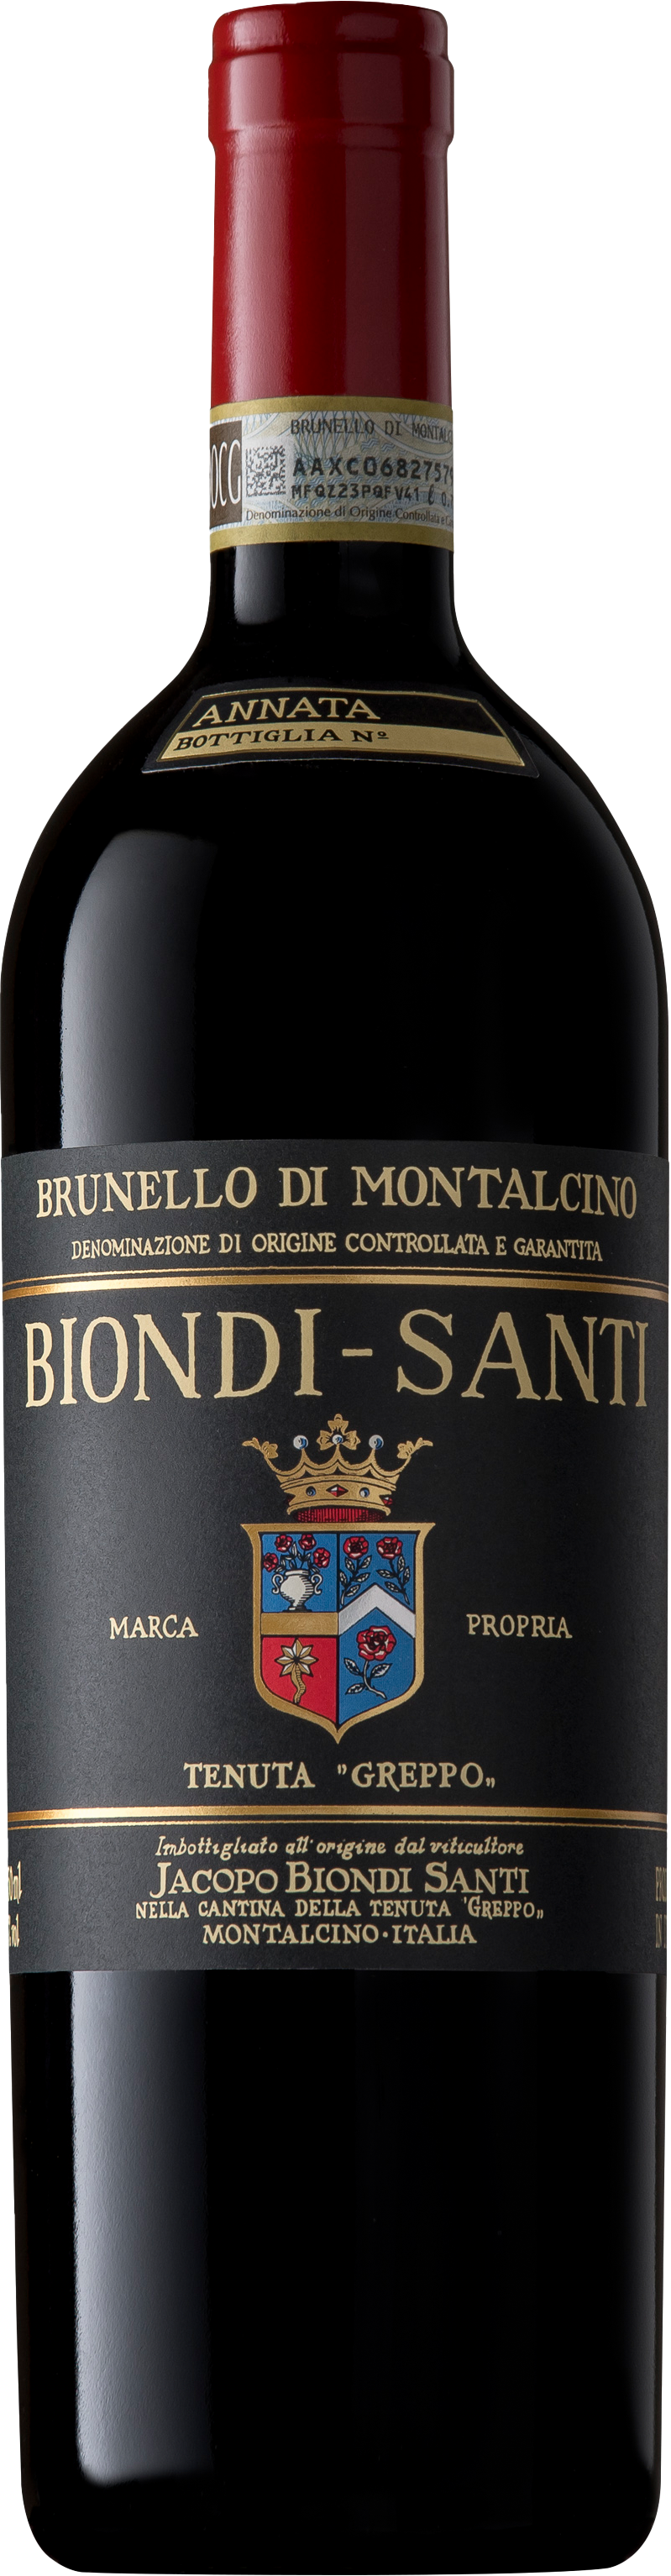 Köstlichalkoholisches - Biondi Santi Brunello di Montalcino - Onlineshop Ludwig von Kapff